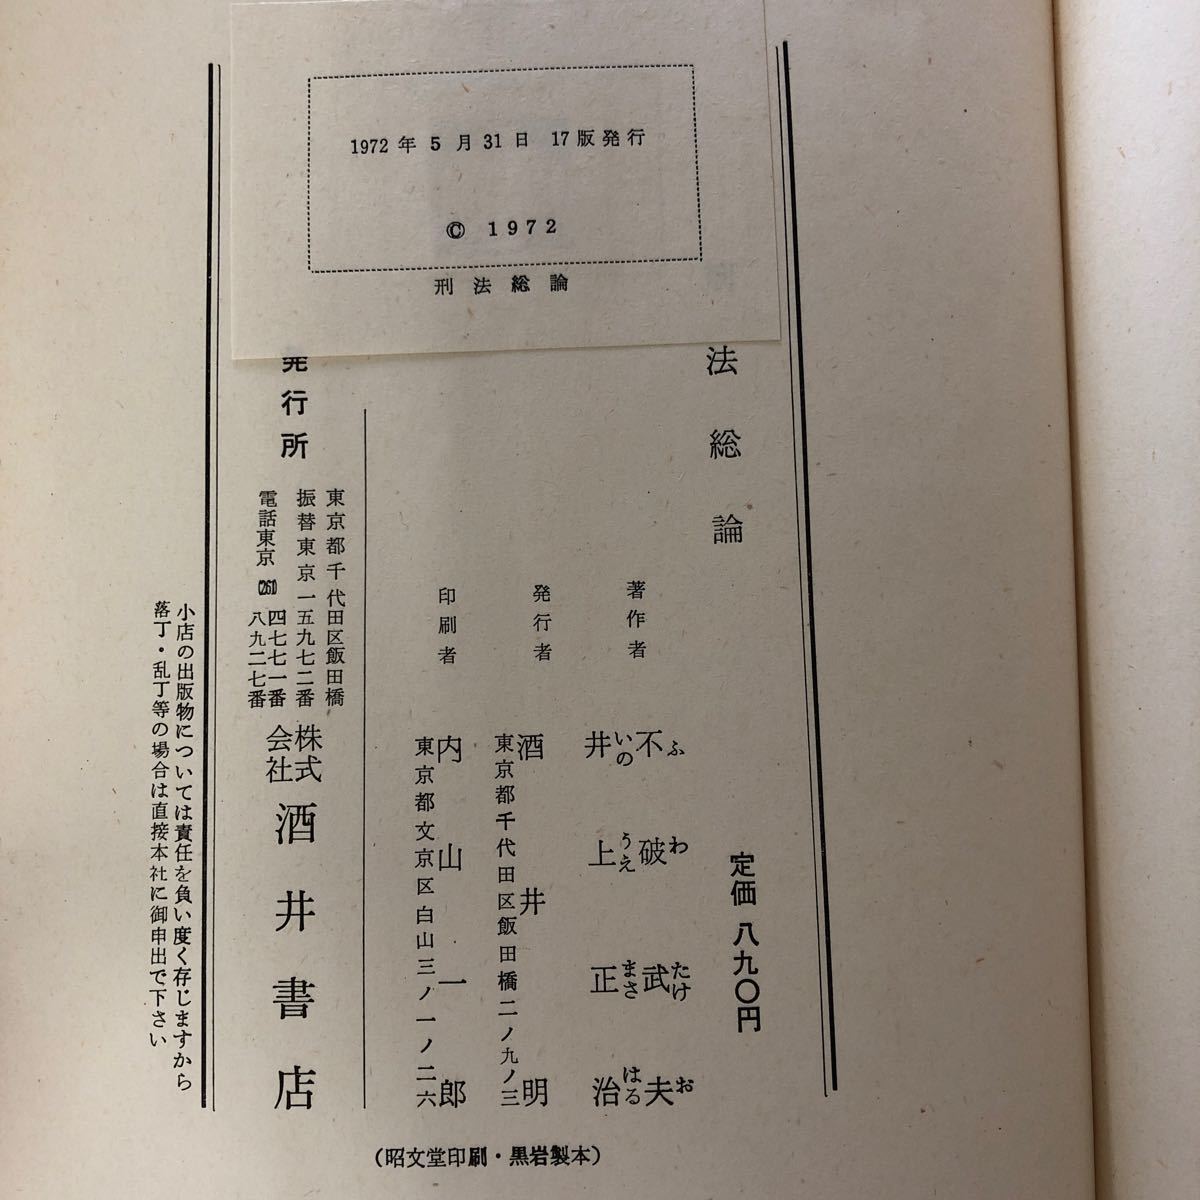 N-ш/. закон общий теория работа / не поломка . Хара * Inoue правильный .1972 год 5 месяц 31 день 17 версия выпуск sake . книжный магазин 